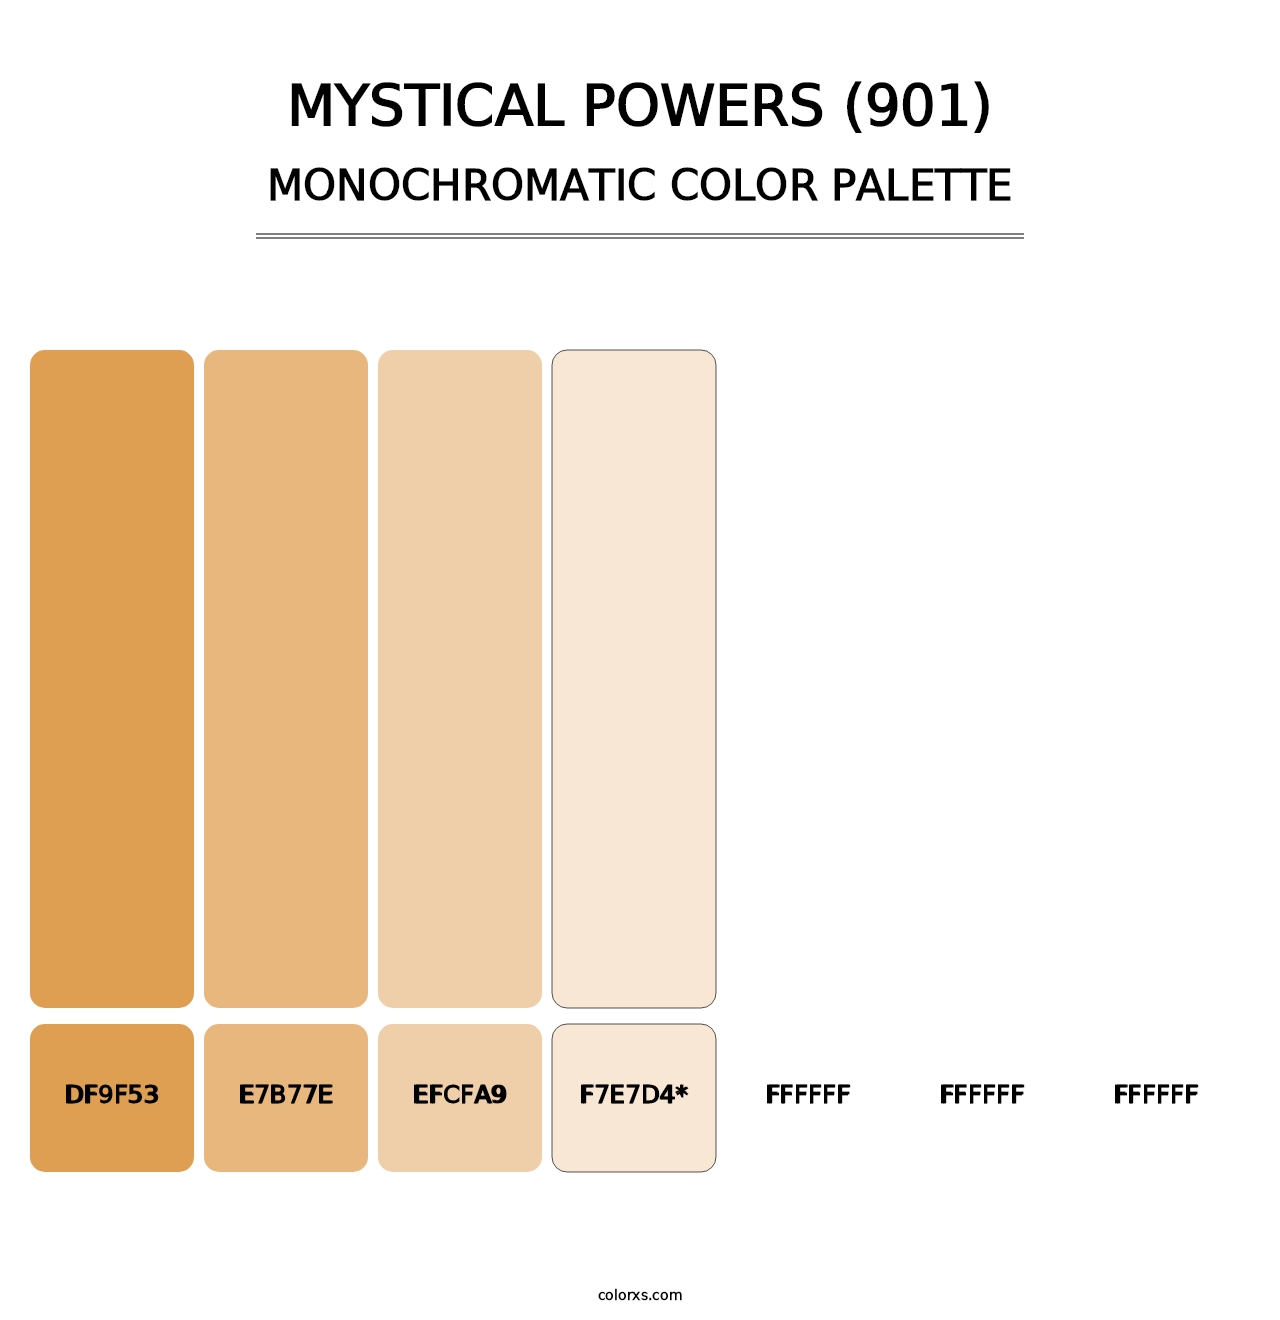 Mystical Powers (901) - Monochromatic Color Palette